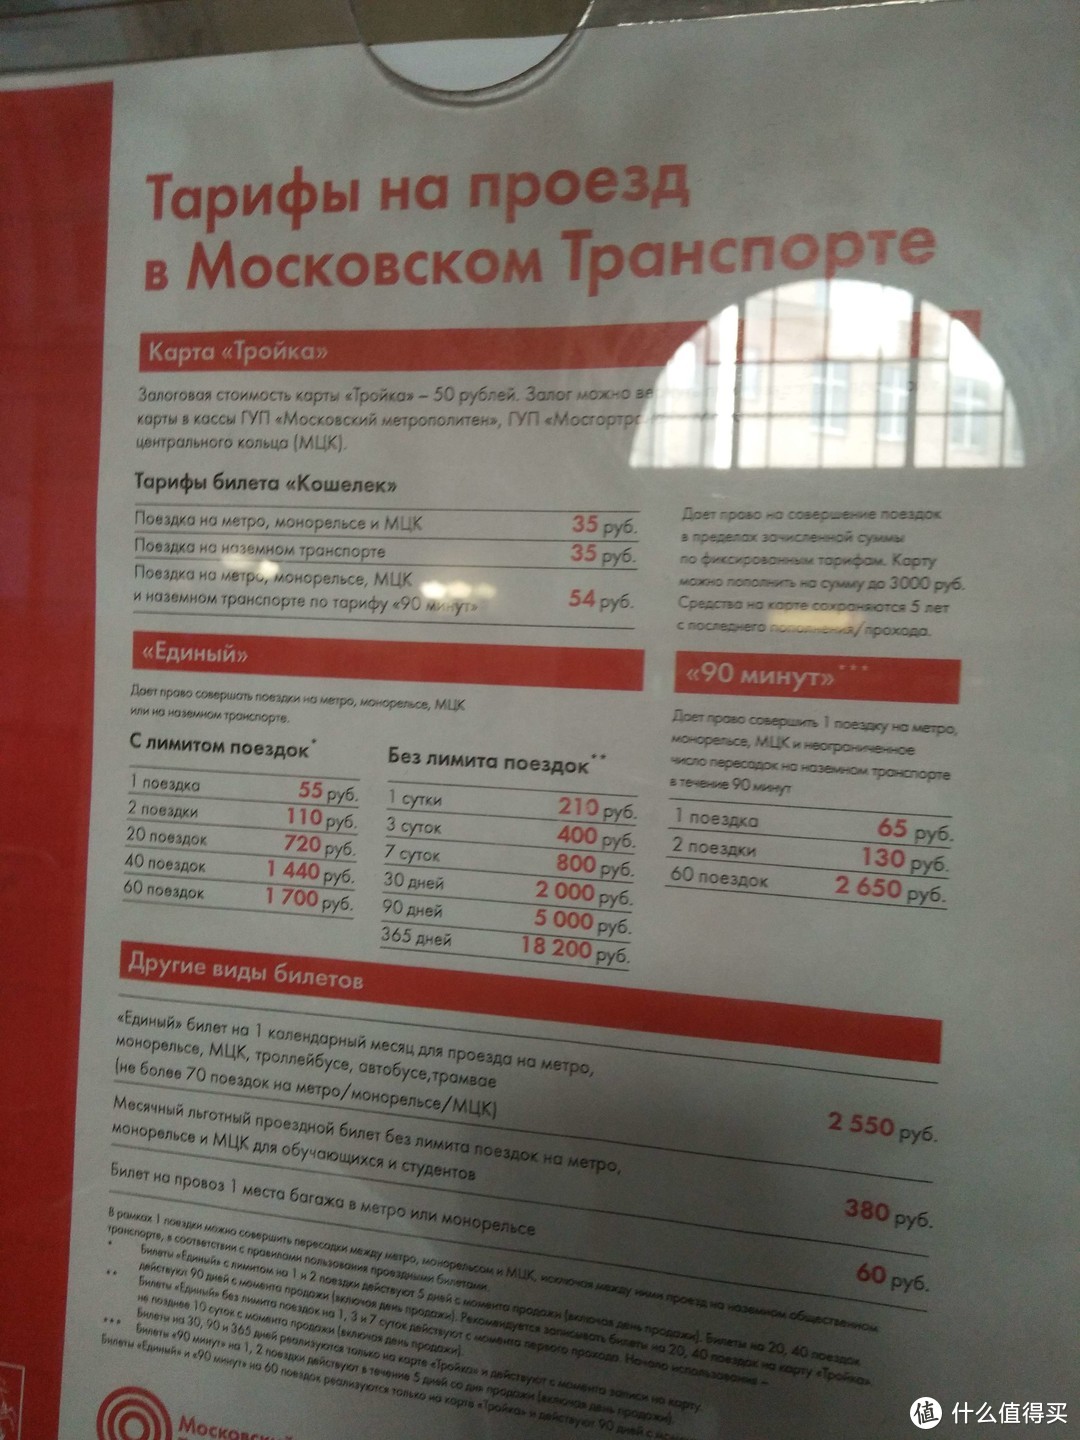 地铁价格很合适，一次不限站55卢布折人民币5-6块，其中3天不限次数400卢布最合适，其实俄语里面很多词还是能看出英语的意思的